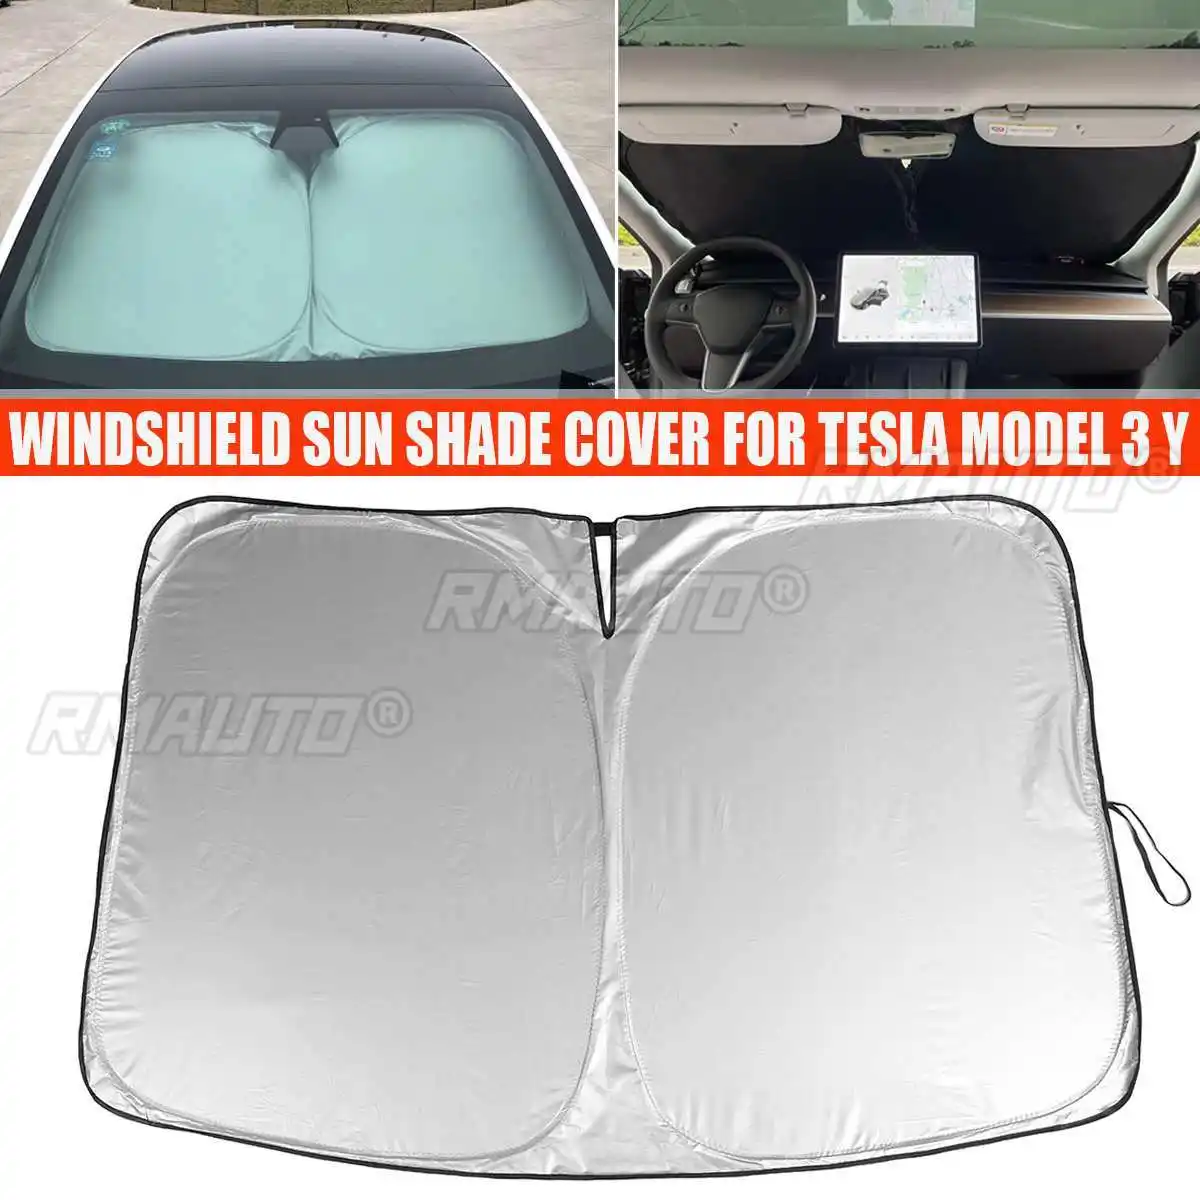 190T voiture pare-brise pare-soleil couvre visières Auto fenêtre avant crème solaire Parasol Coche pour Tesla modèle 3 Y pare-soleil accessoires